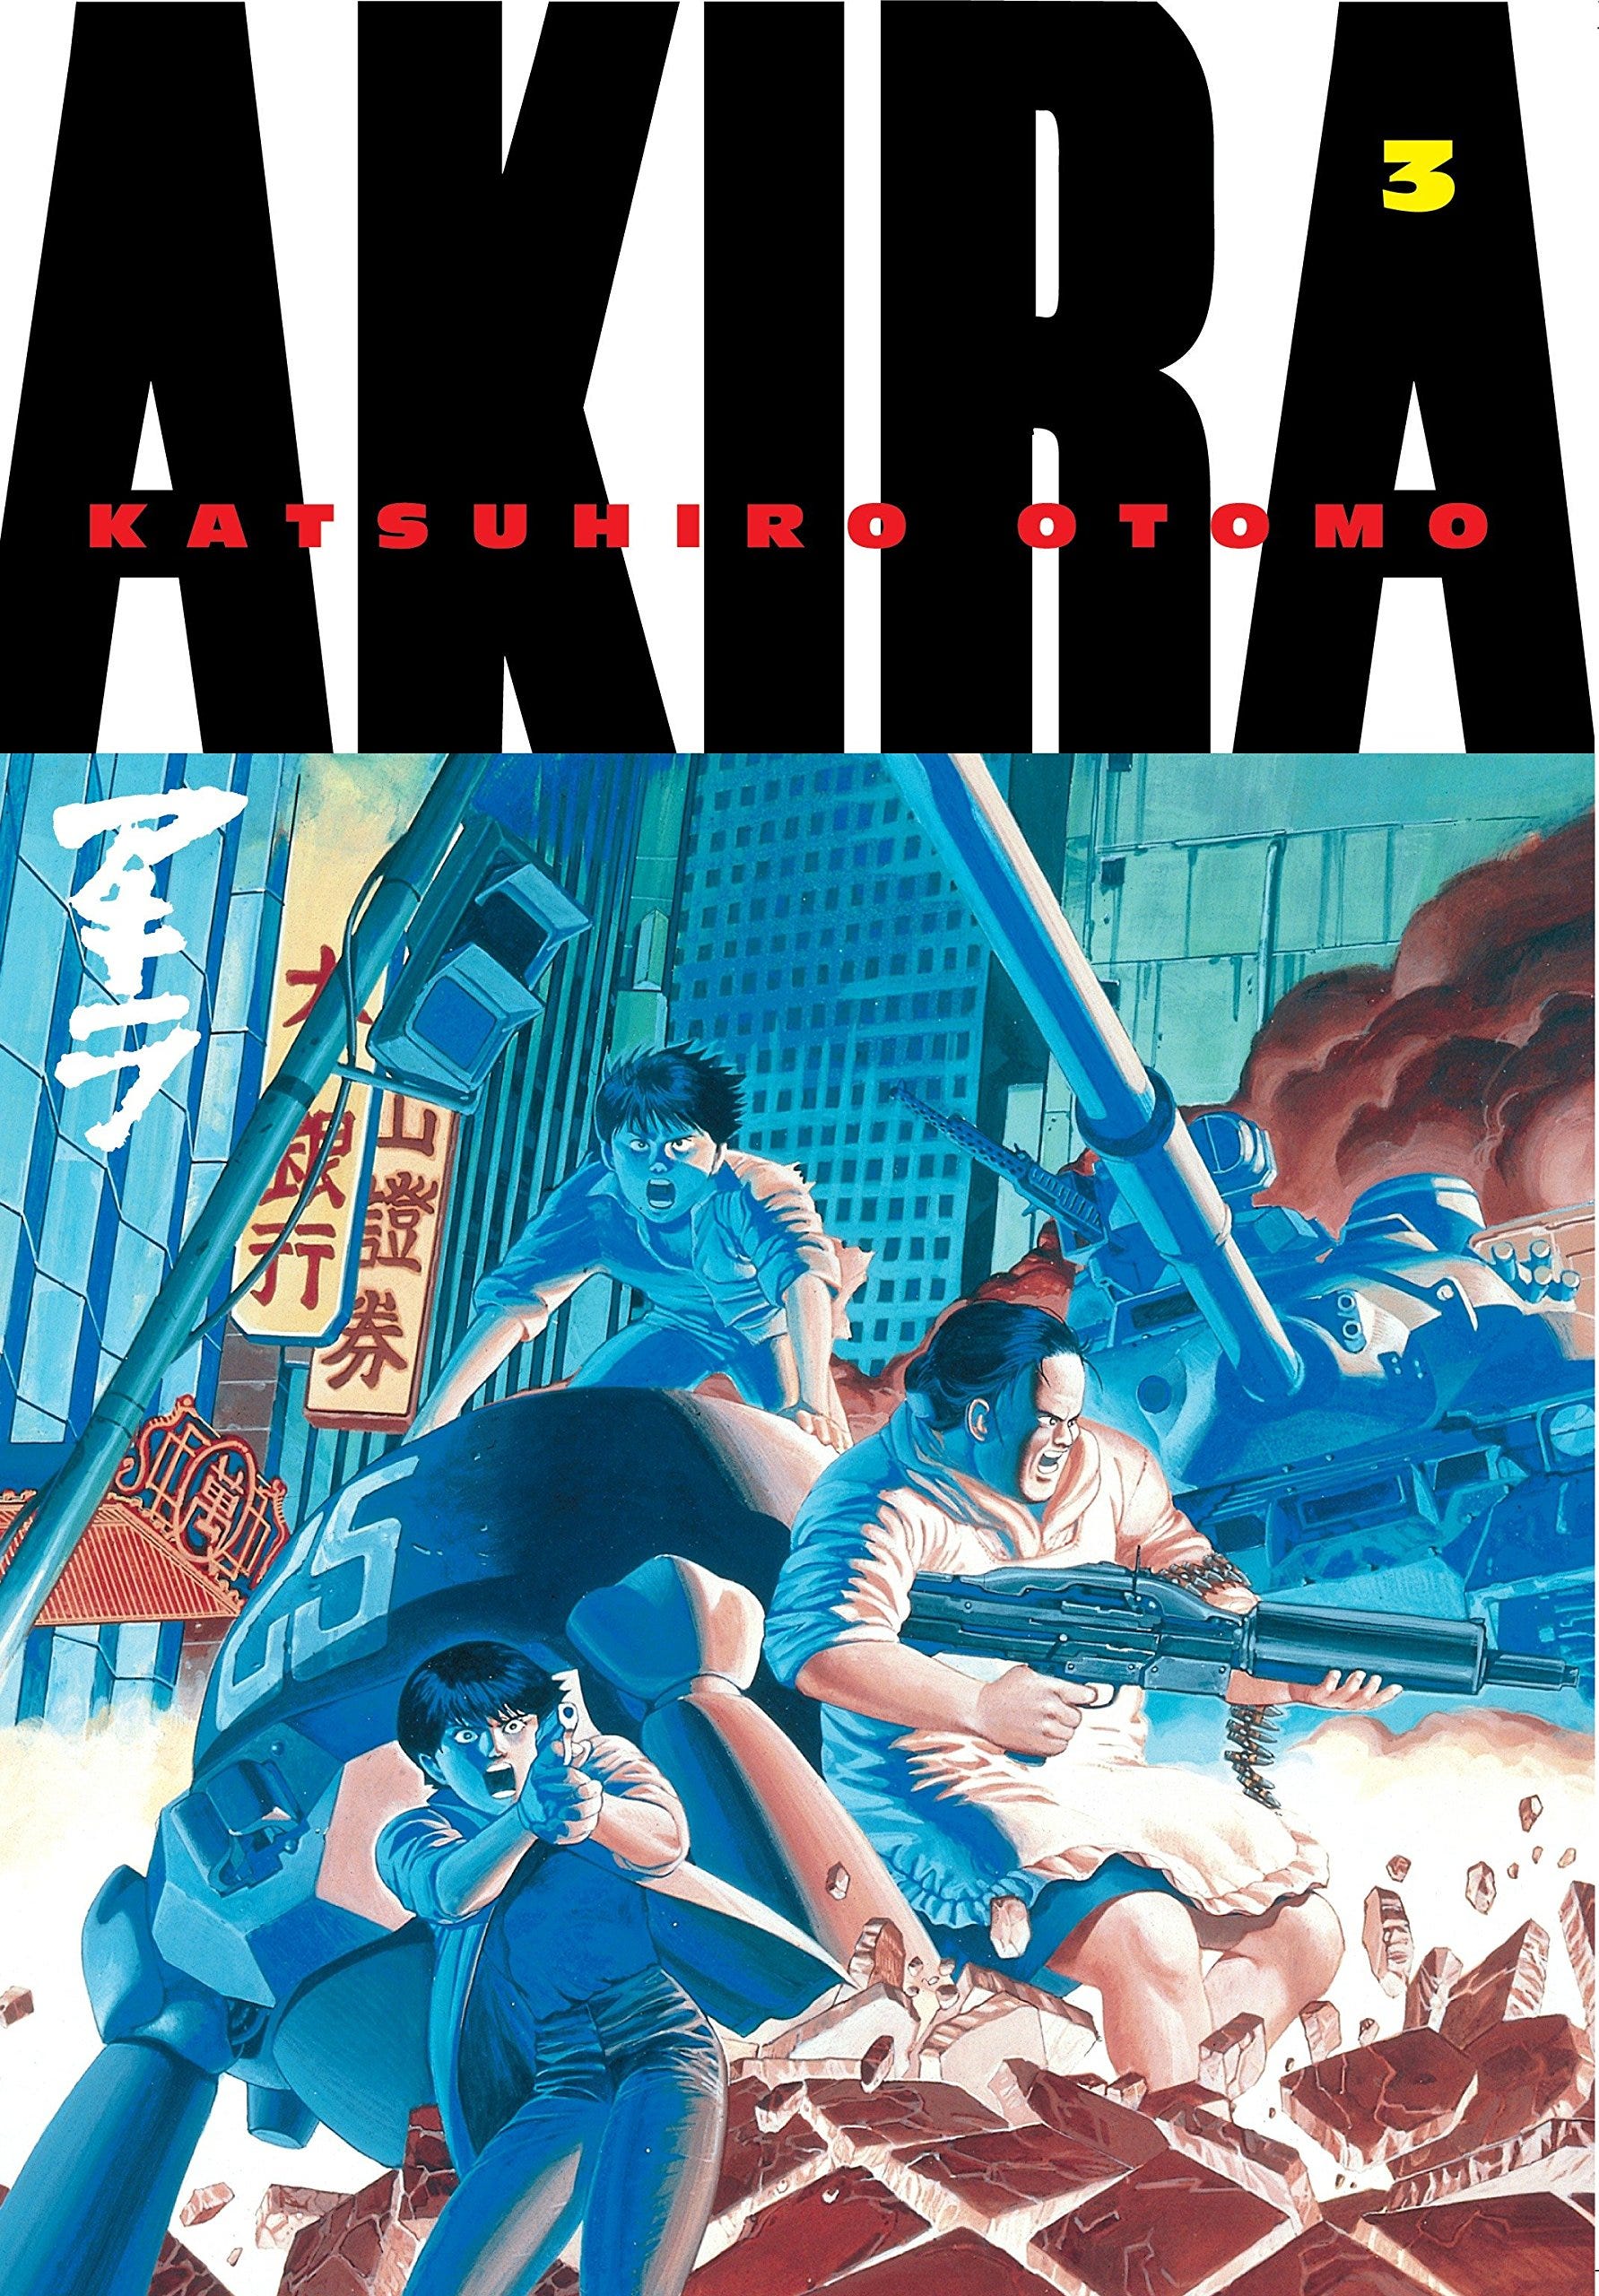 Check Out This Awesome $200 Akira Manga Box Set - GameSpot